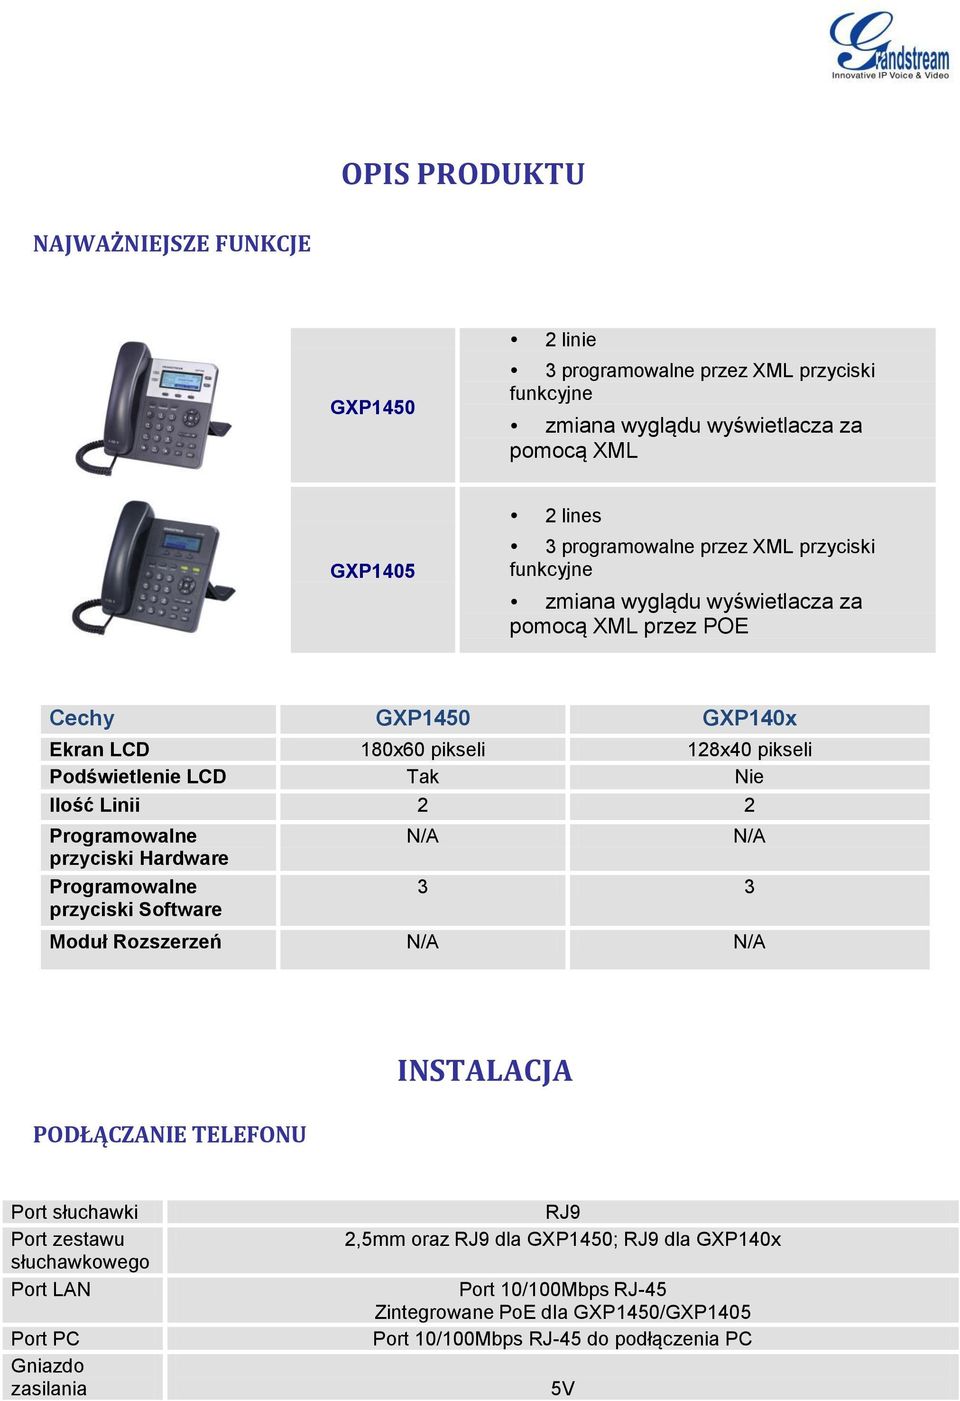 Programowalne przyciski Hardware Programowalne przyciski Software N/A N/A 3 3 Moduł Rozszerzeń N/A N/A PODŁĄCZANIE TELEFONU INSTALACJA Port słuchawki Port zestawu słuchawkowego